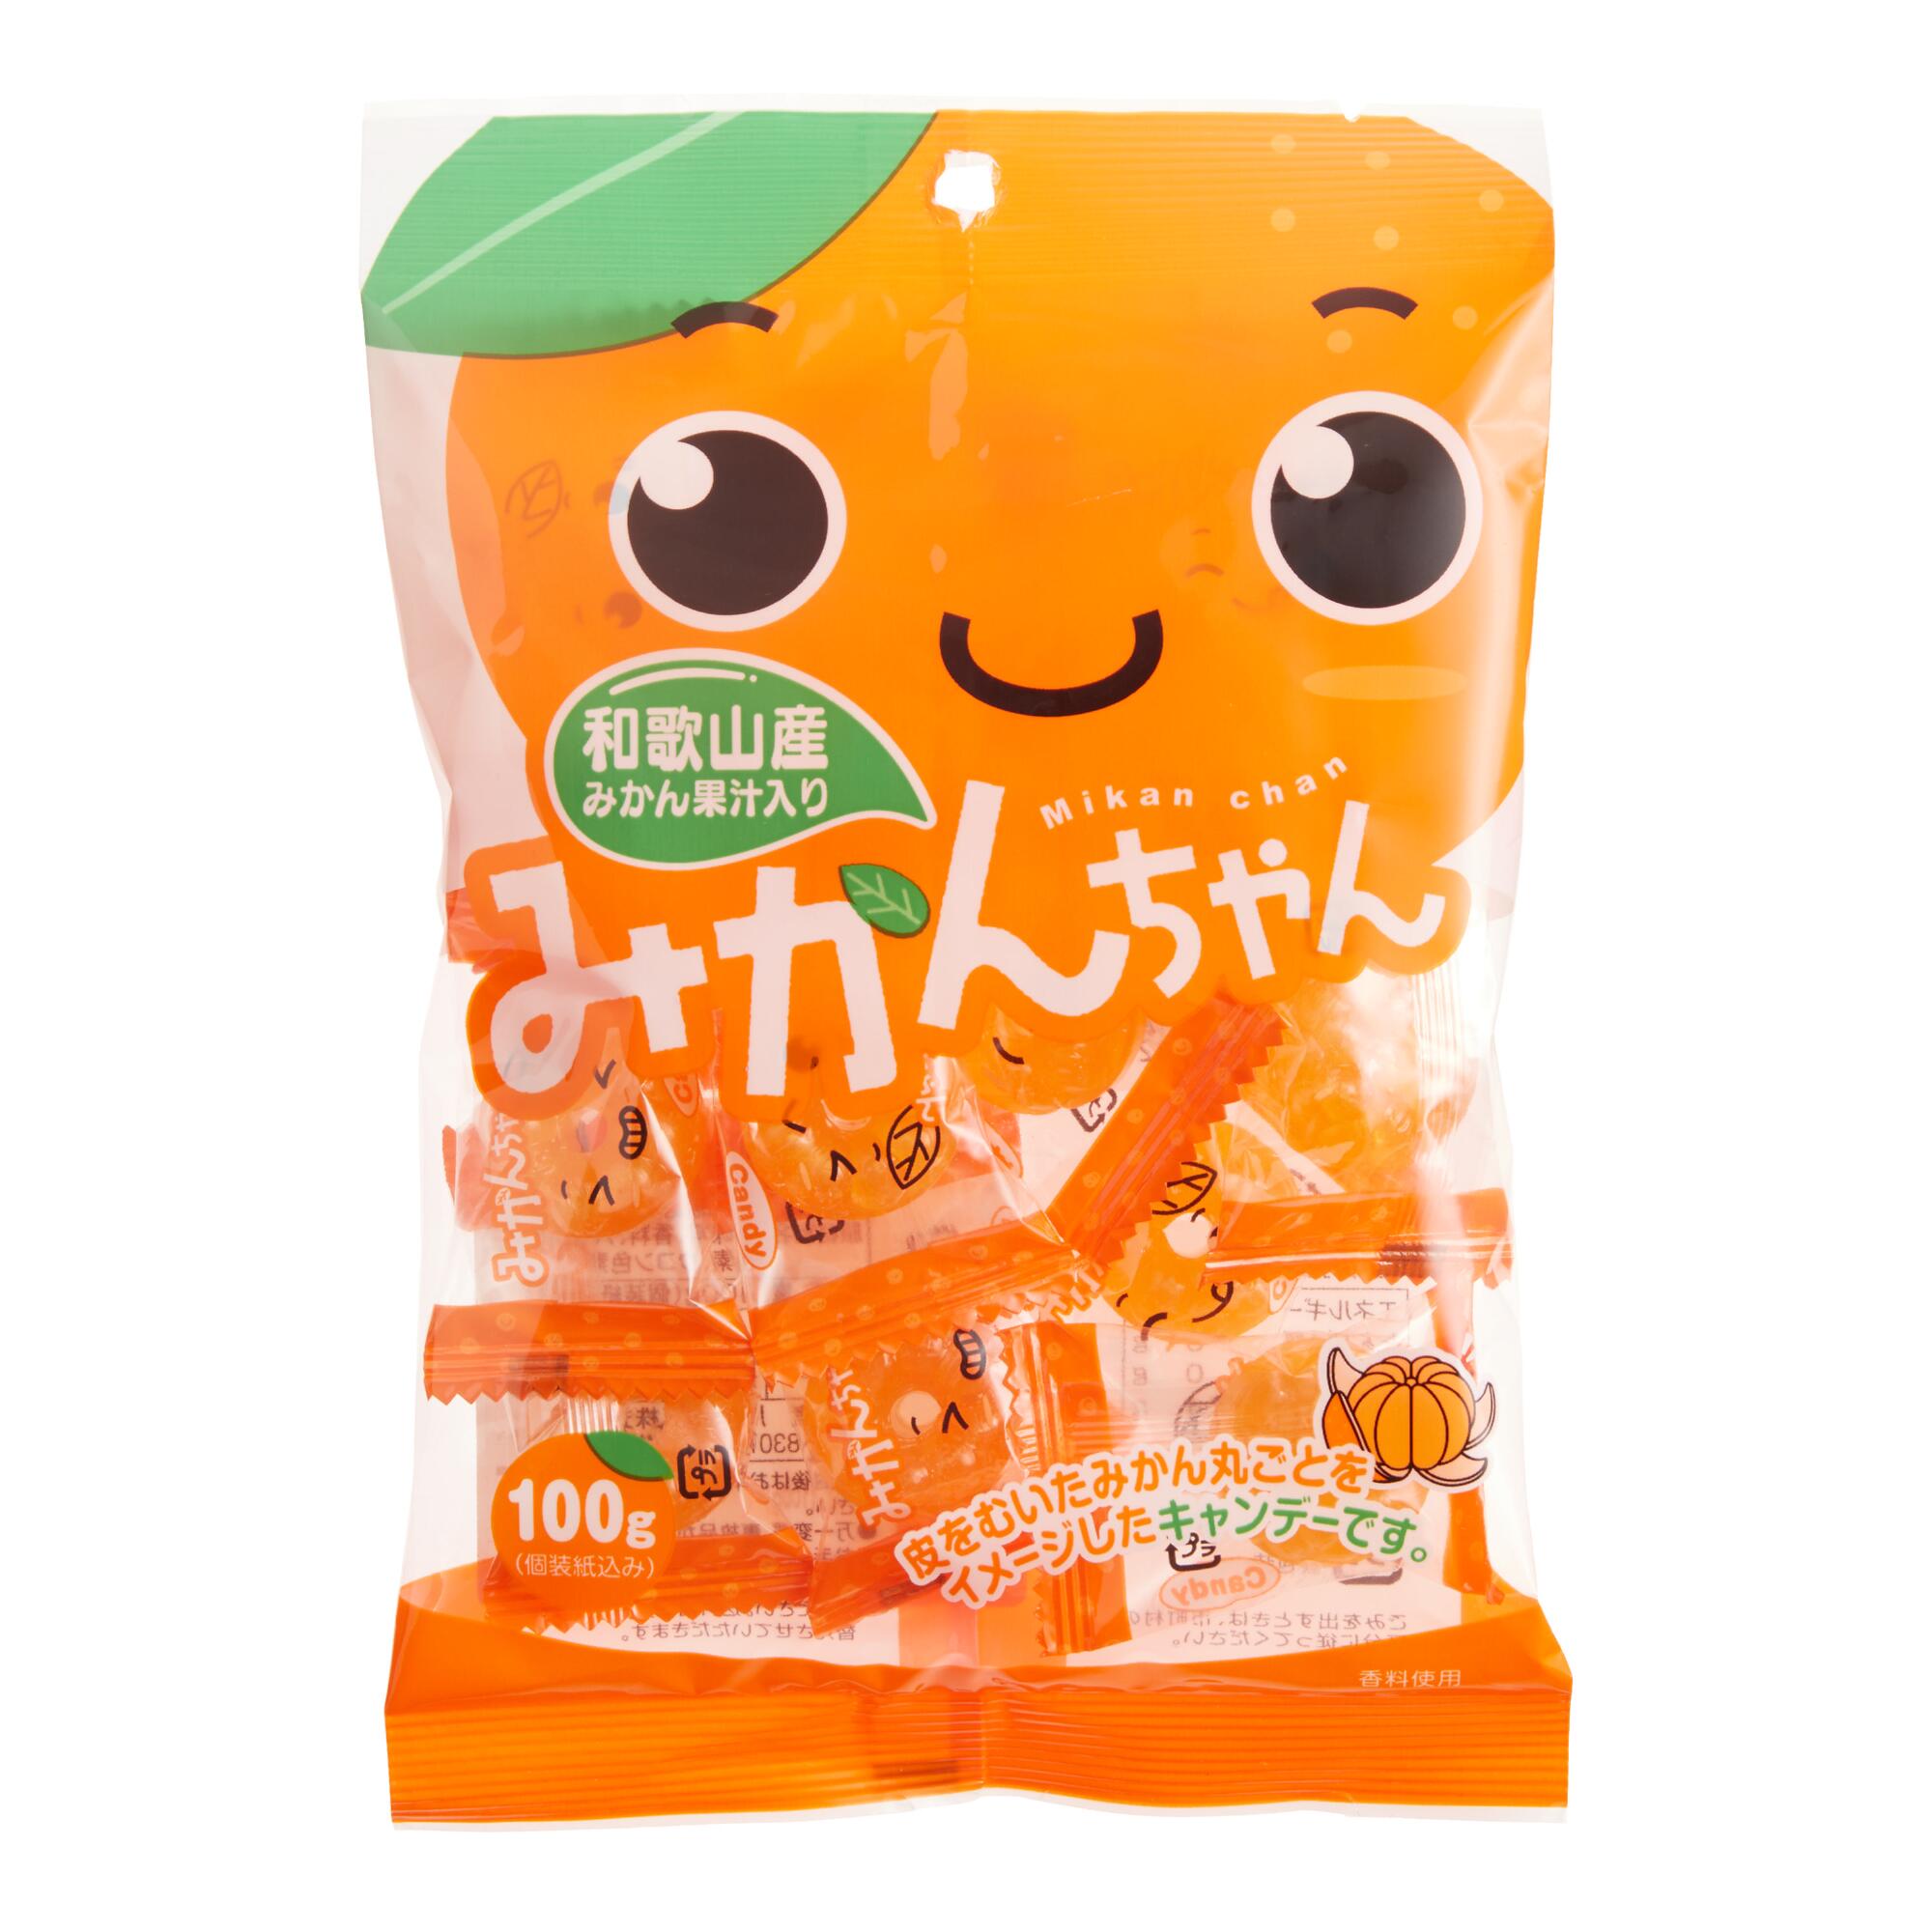 Kawaguchi Mikan Chan Orange Hard Candy Set Of 5 by World Market